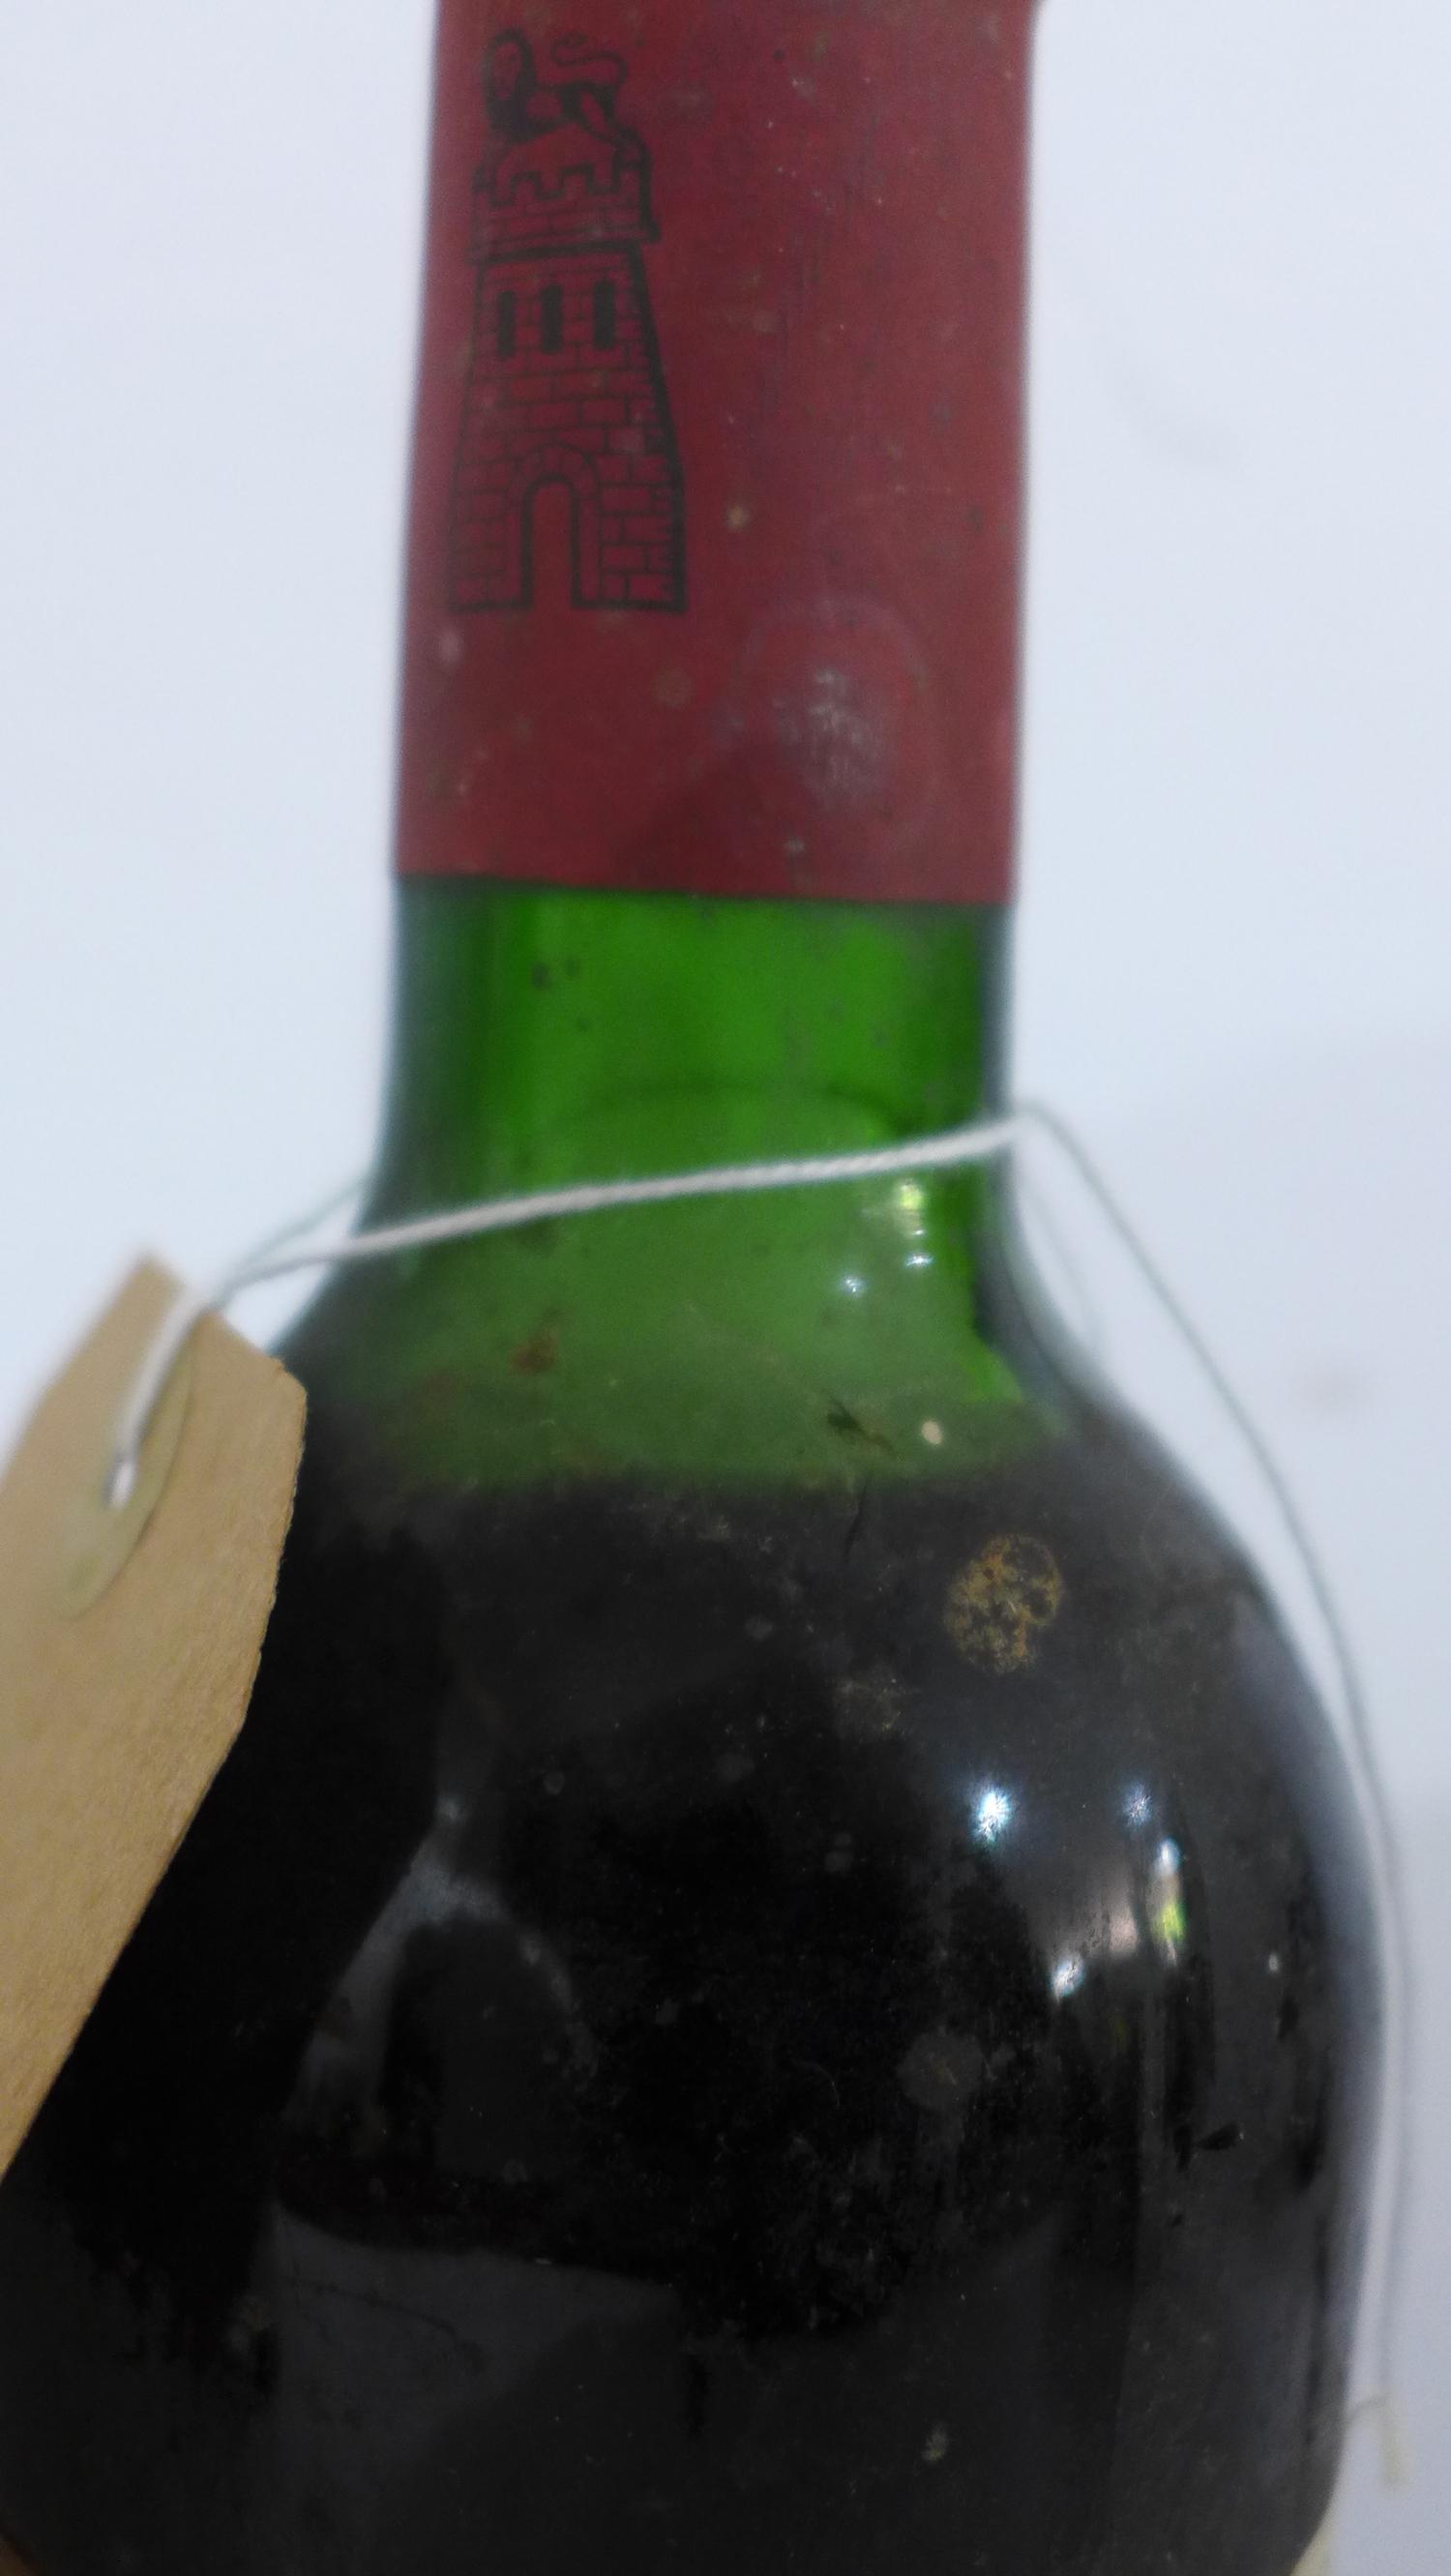 Grand Vin de Chateau Latour, 1965, Premier Grand Cru Classé, Pauillac, 1 bottle - Image 3 of 3